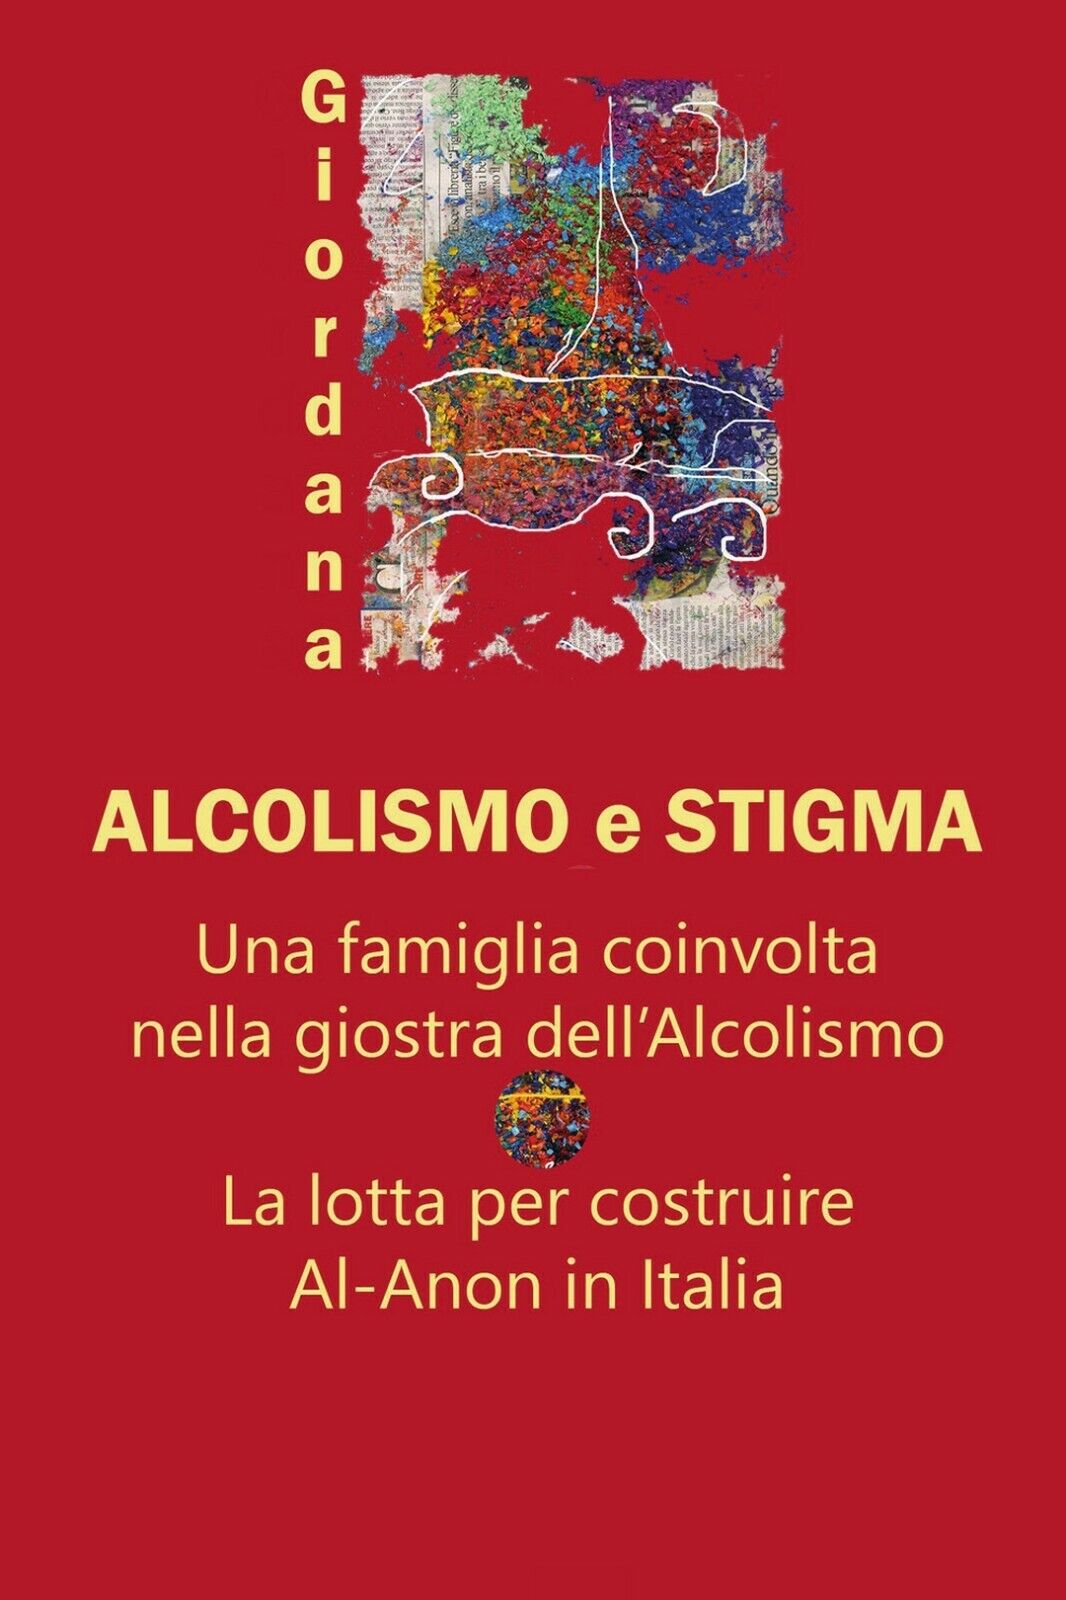 Alcolismo e Stigma  di Giordana,  2020,  Youcanprint